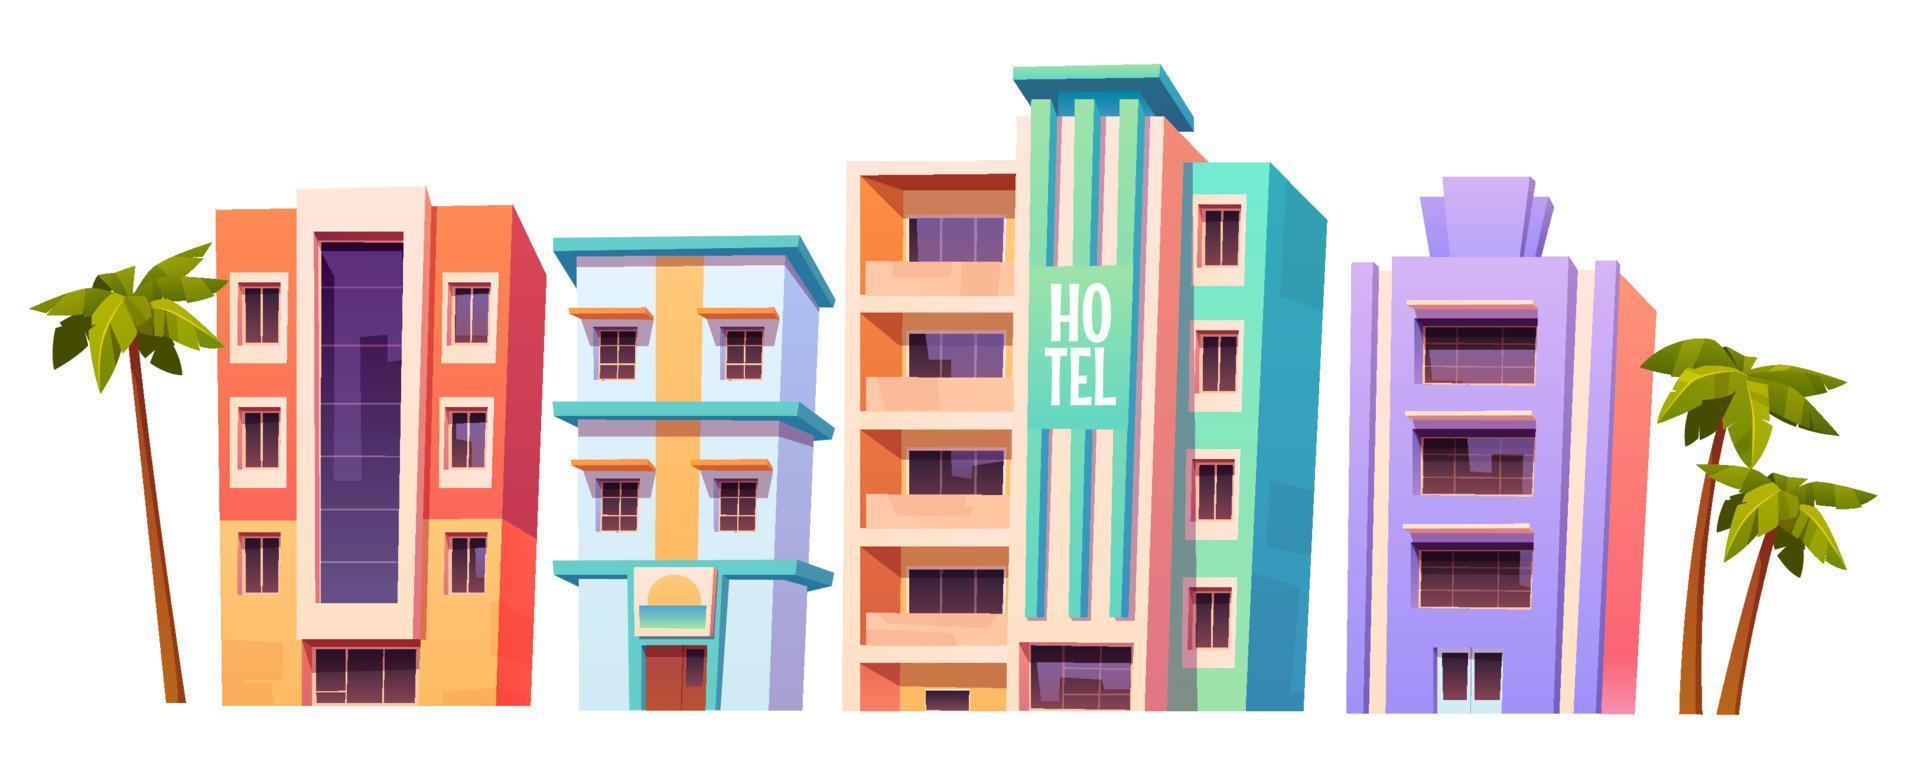 Gebäude, moderne Hotels in Miami zur Sommerzeit vektor